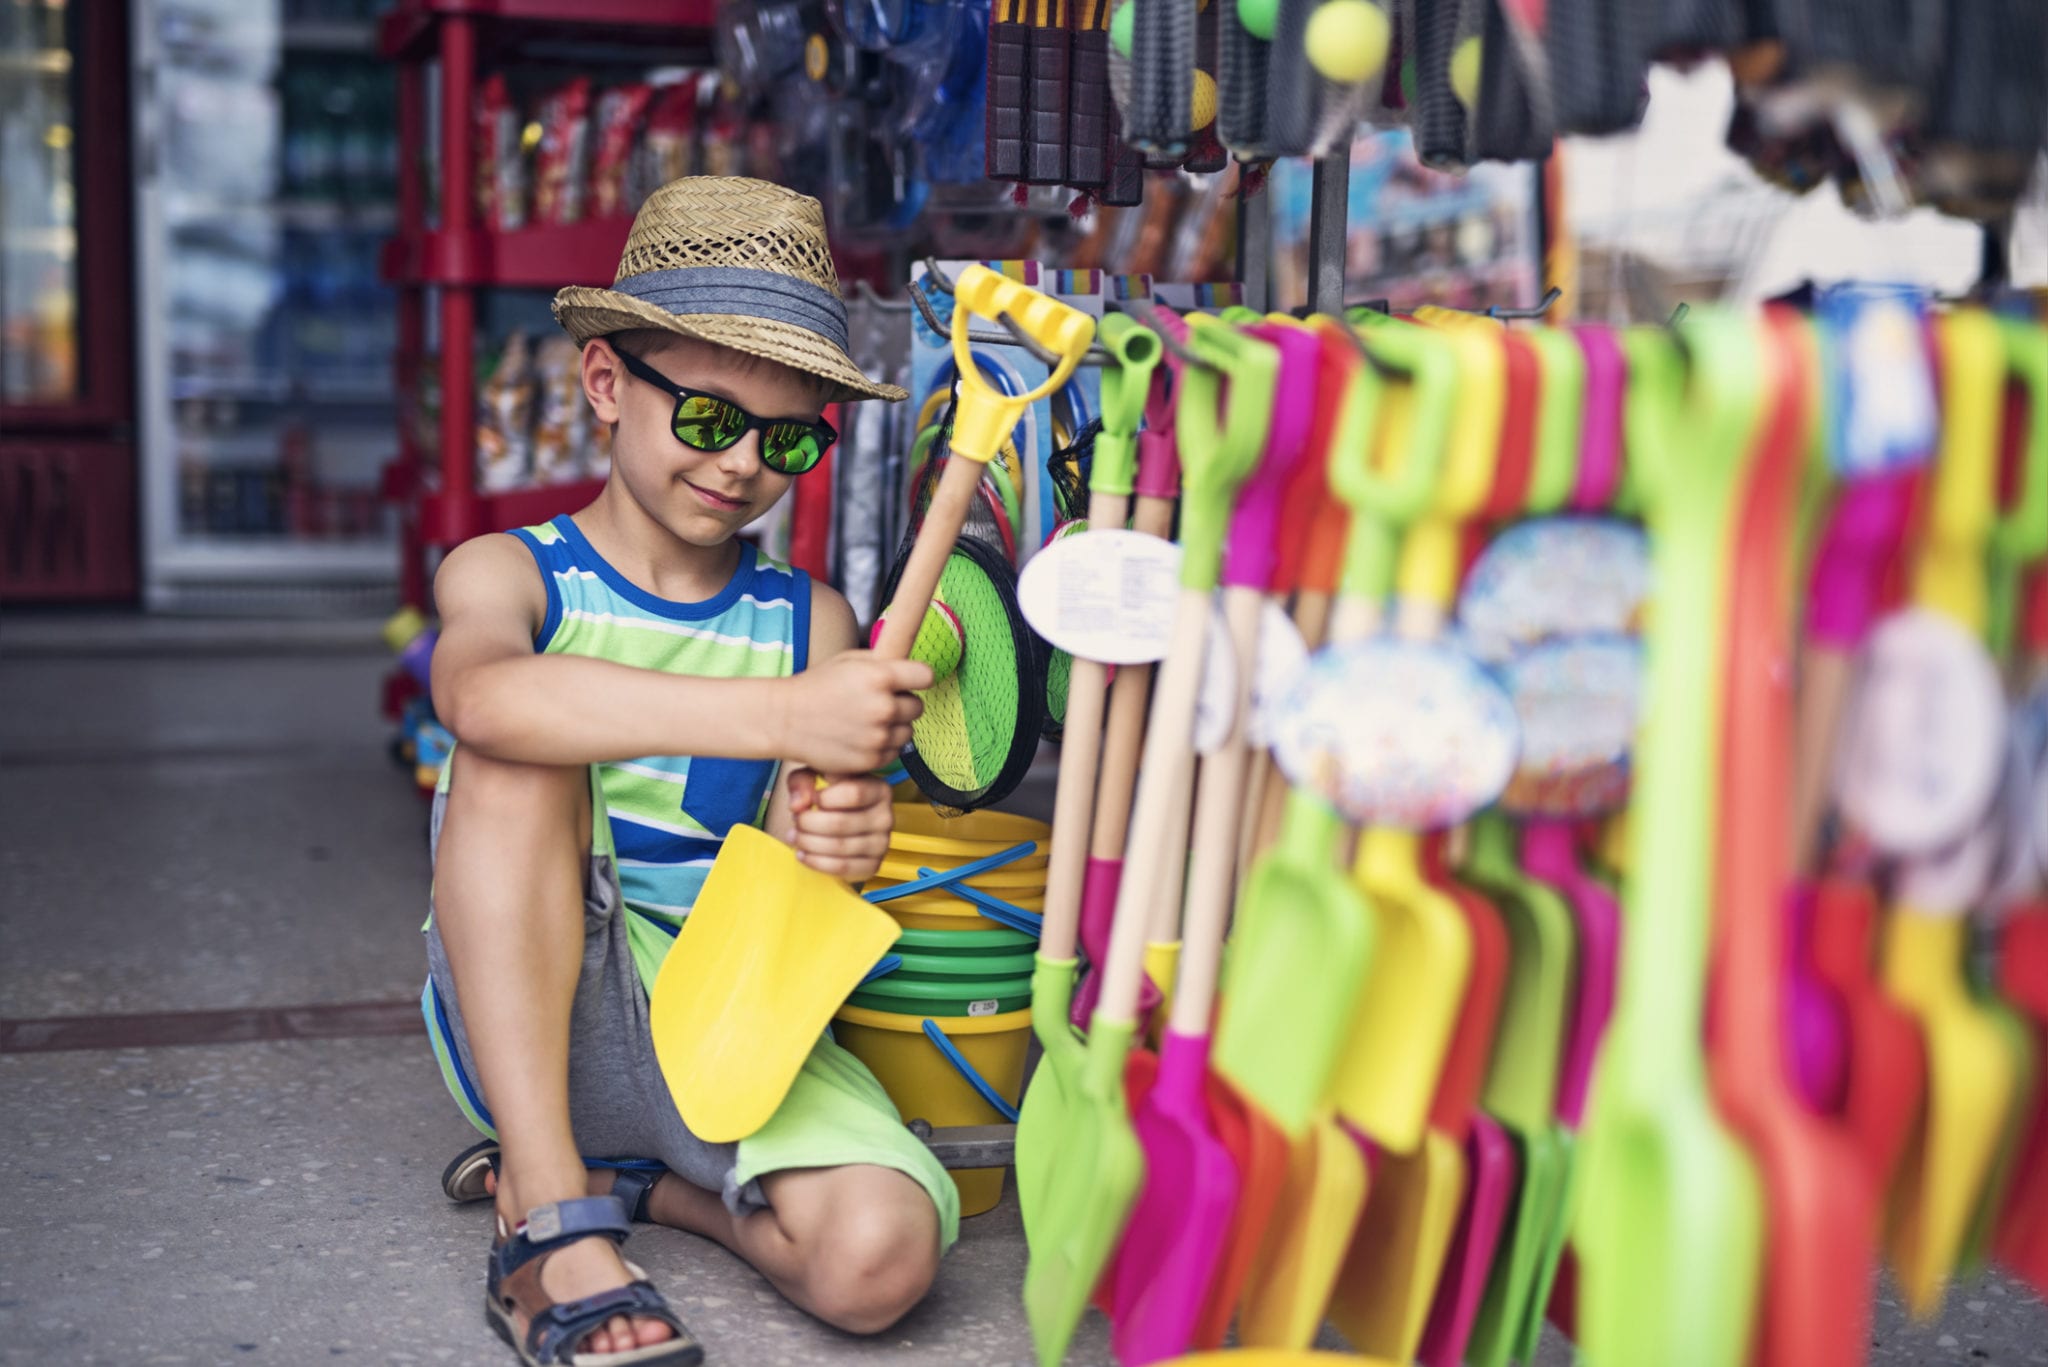 Boy shopping at Myrtle Beach Boardwalk Shops